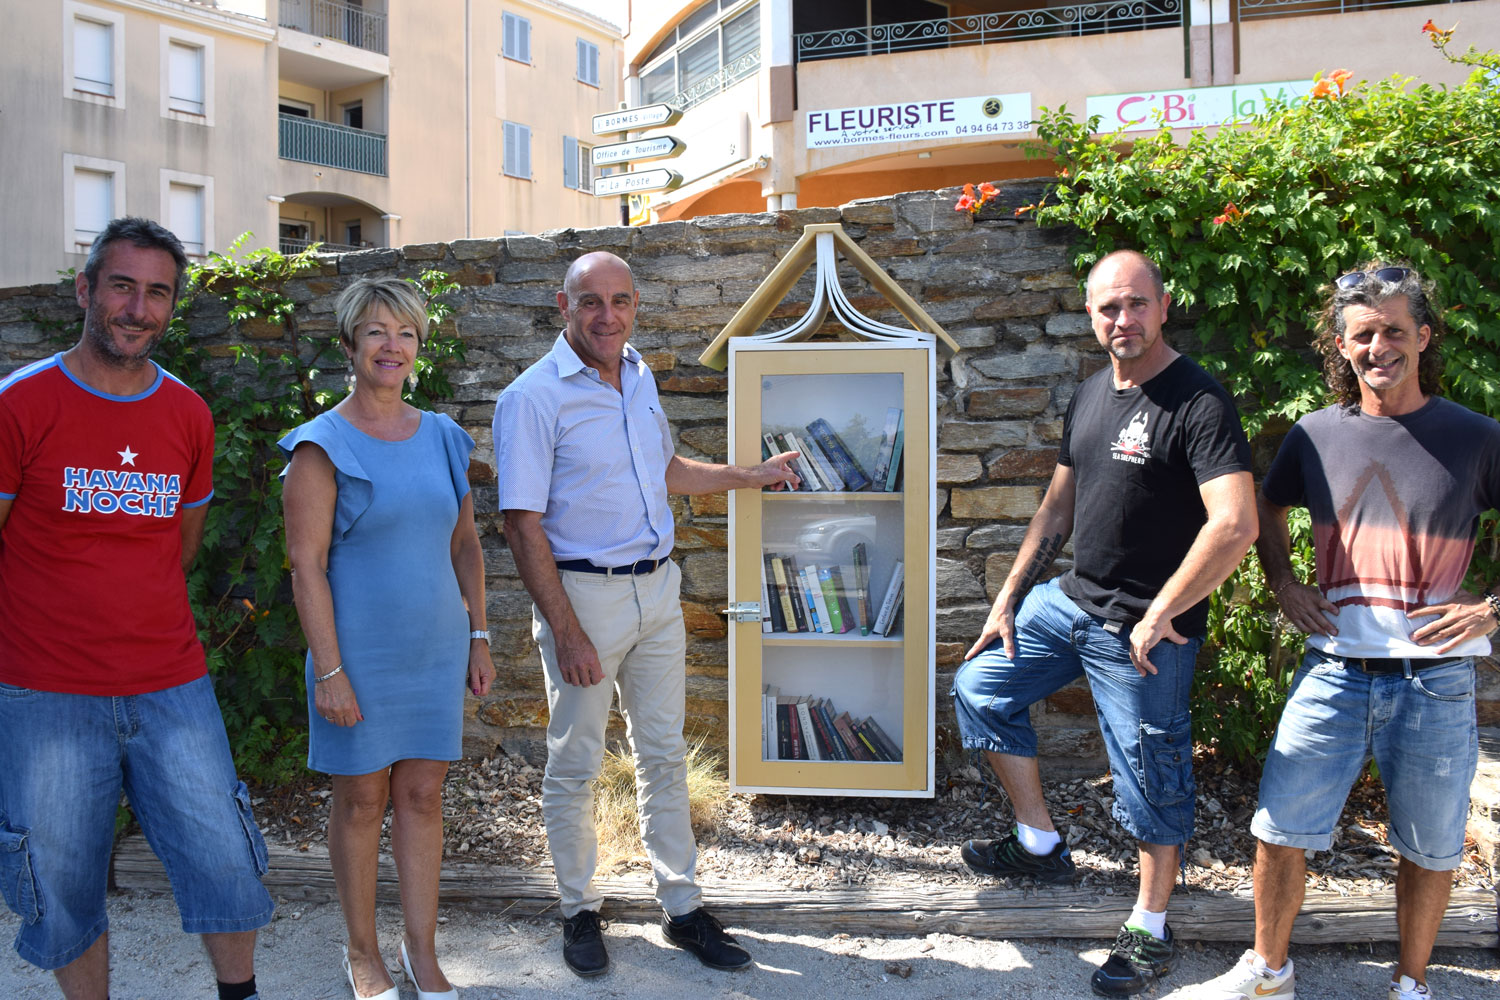 De gauche à droite : Jérôme Massolini, adjoint aux travaux, Cathy Casellato, adjoint à la culture, François Arizzi, maire, Jean-Louis Vial créateur des boîtes à livres et Marc Ubeda, artiste.